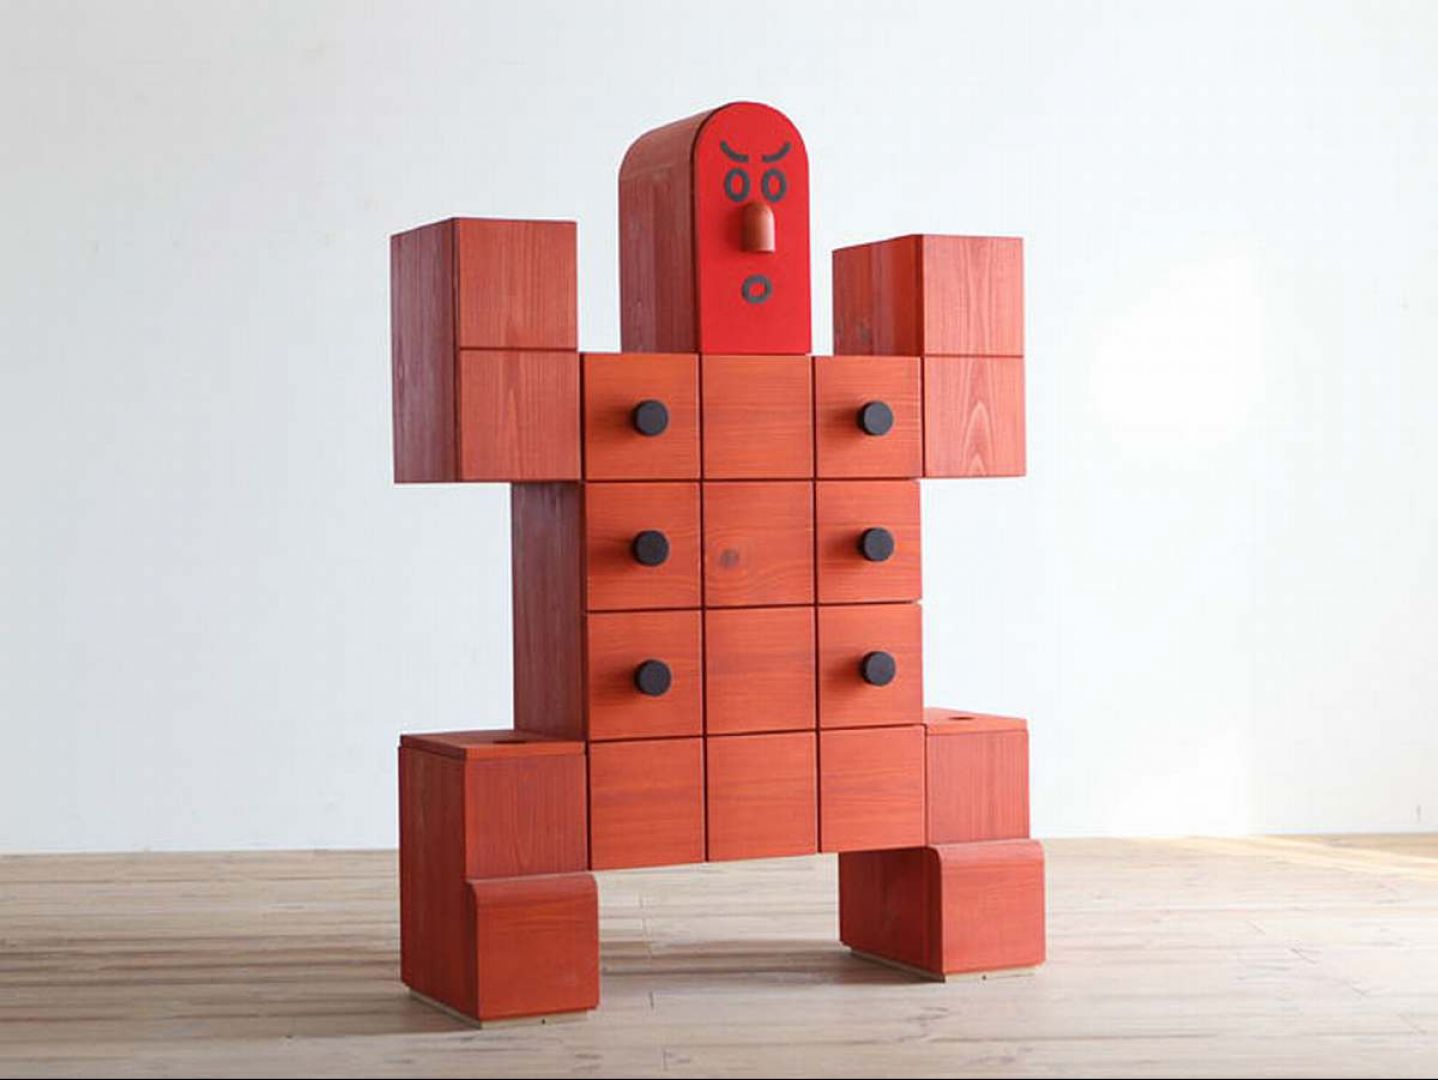 Drewniane szafki w kształcie robota.
Fot. Archiwum  